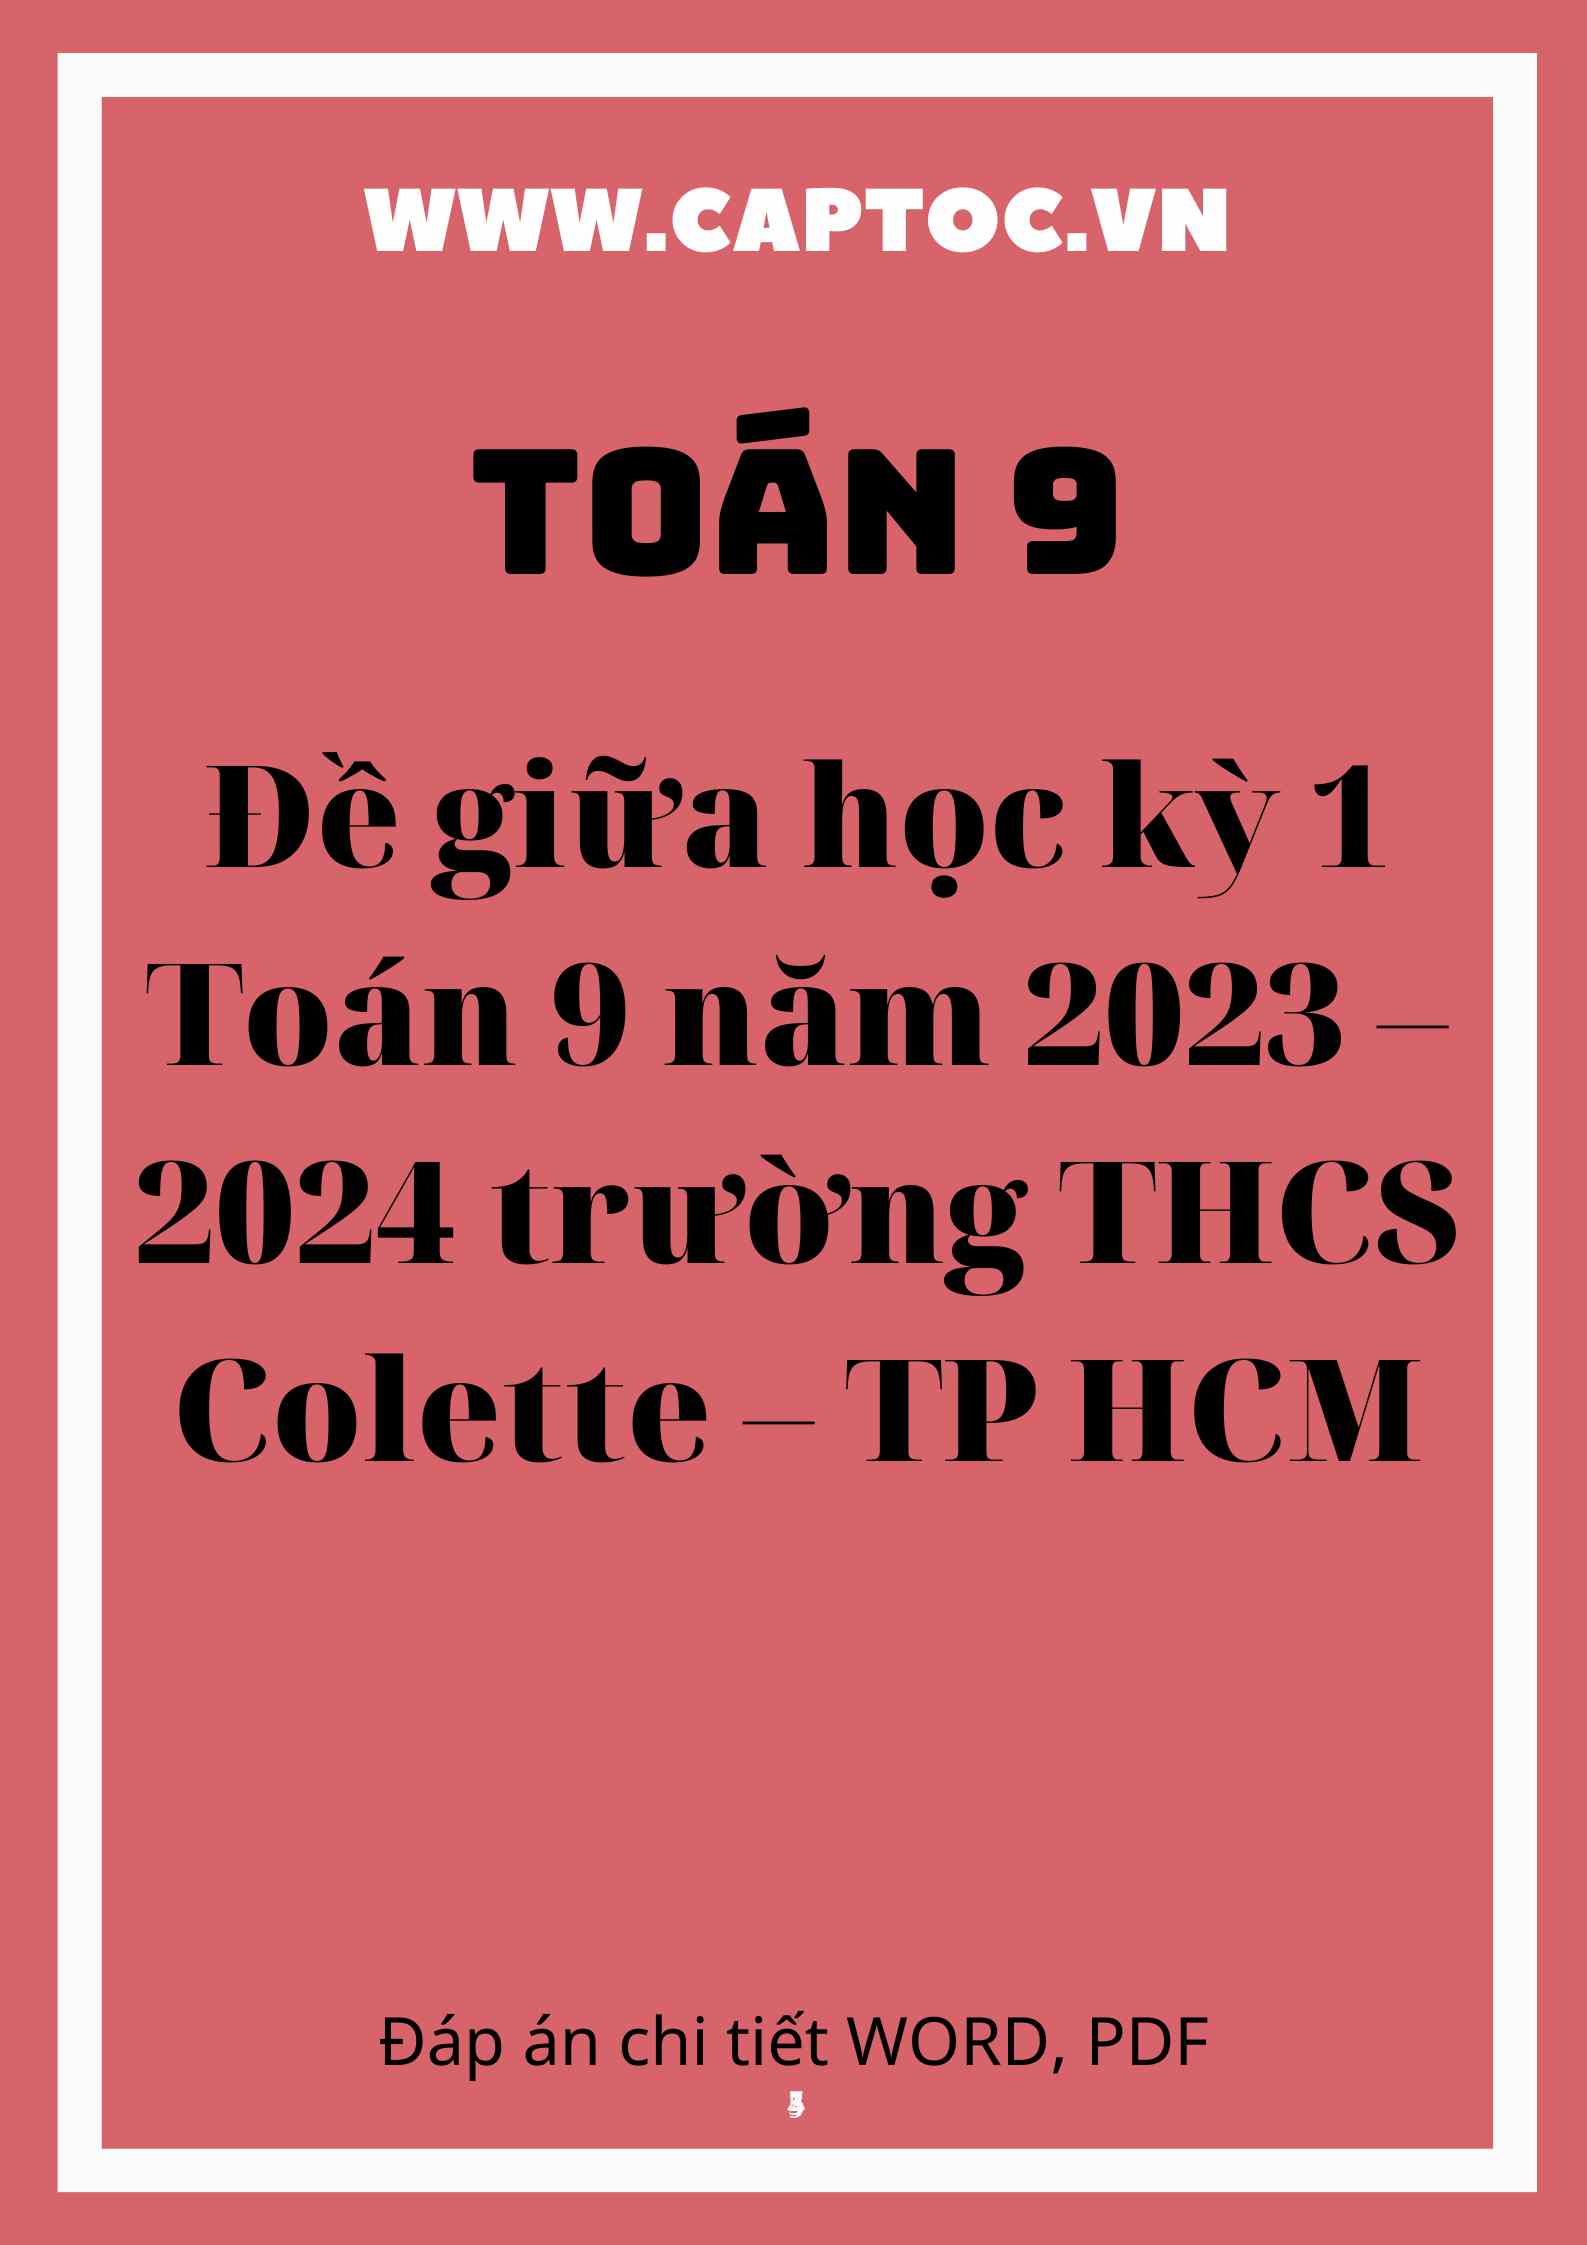 Đề giữa học kỳ 1 Toán 9 năm 2023 – 2024 trường THCS Colette – TP HCM